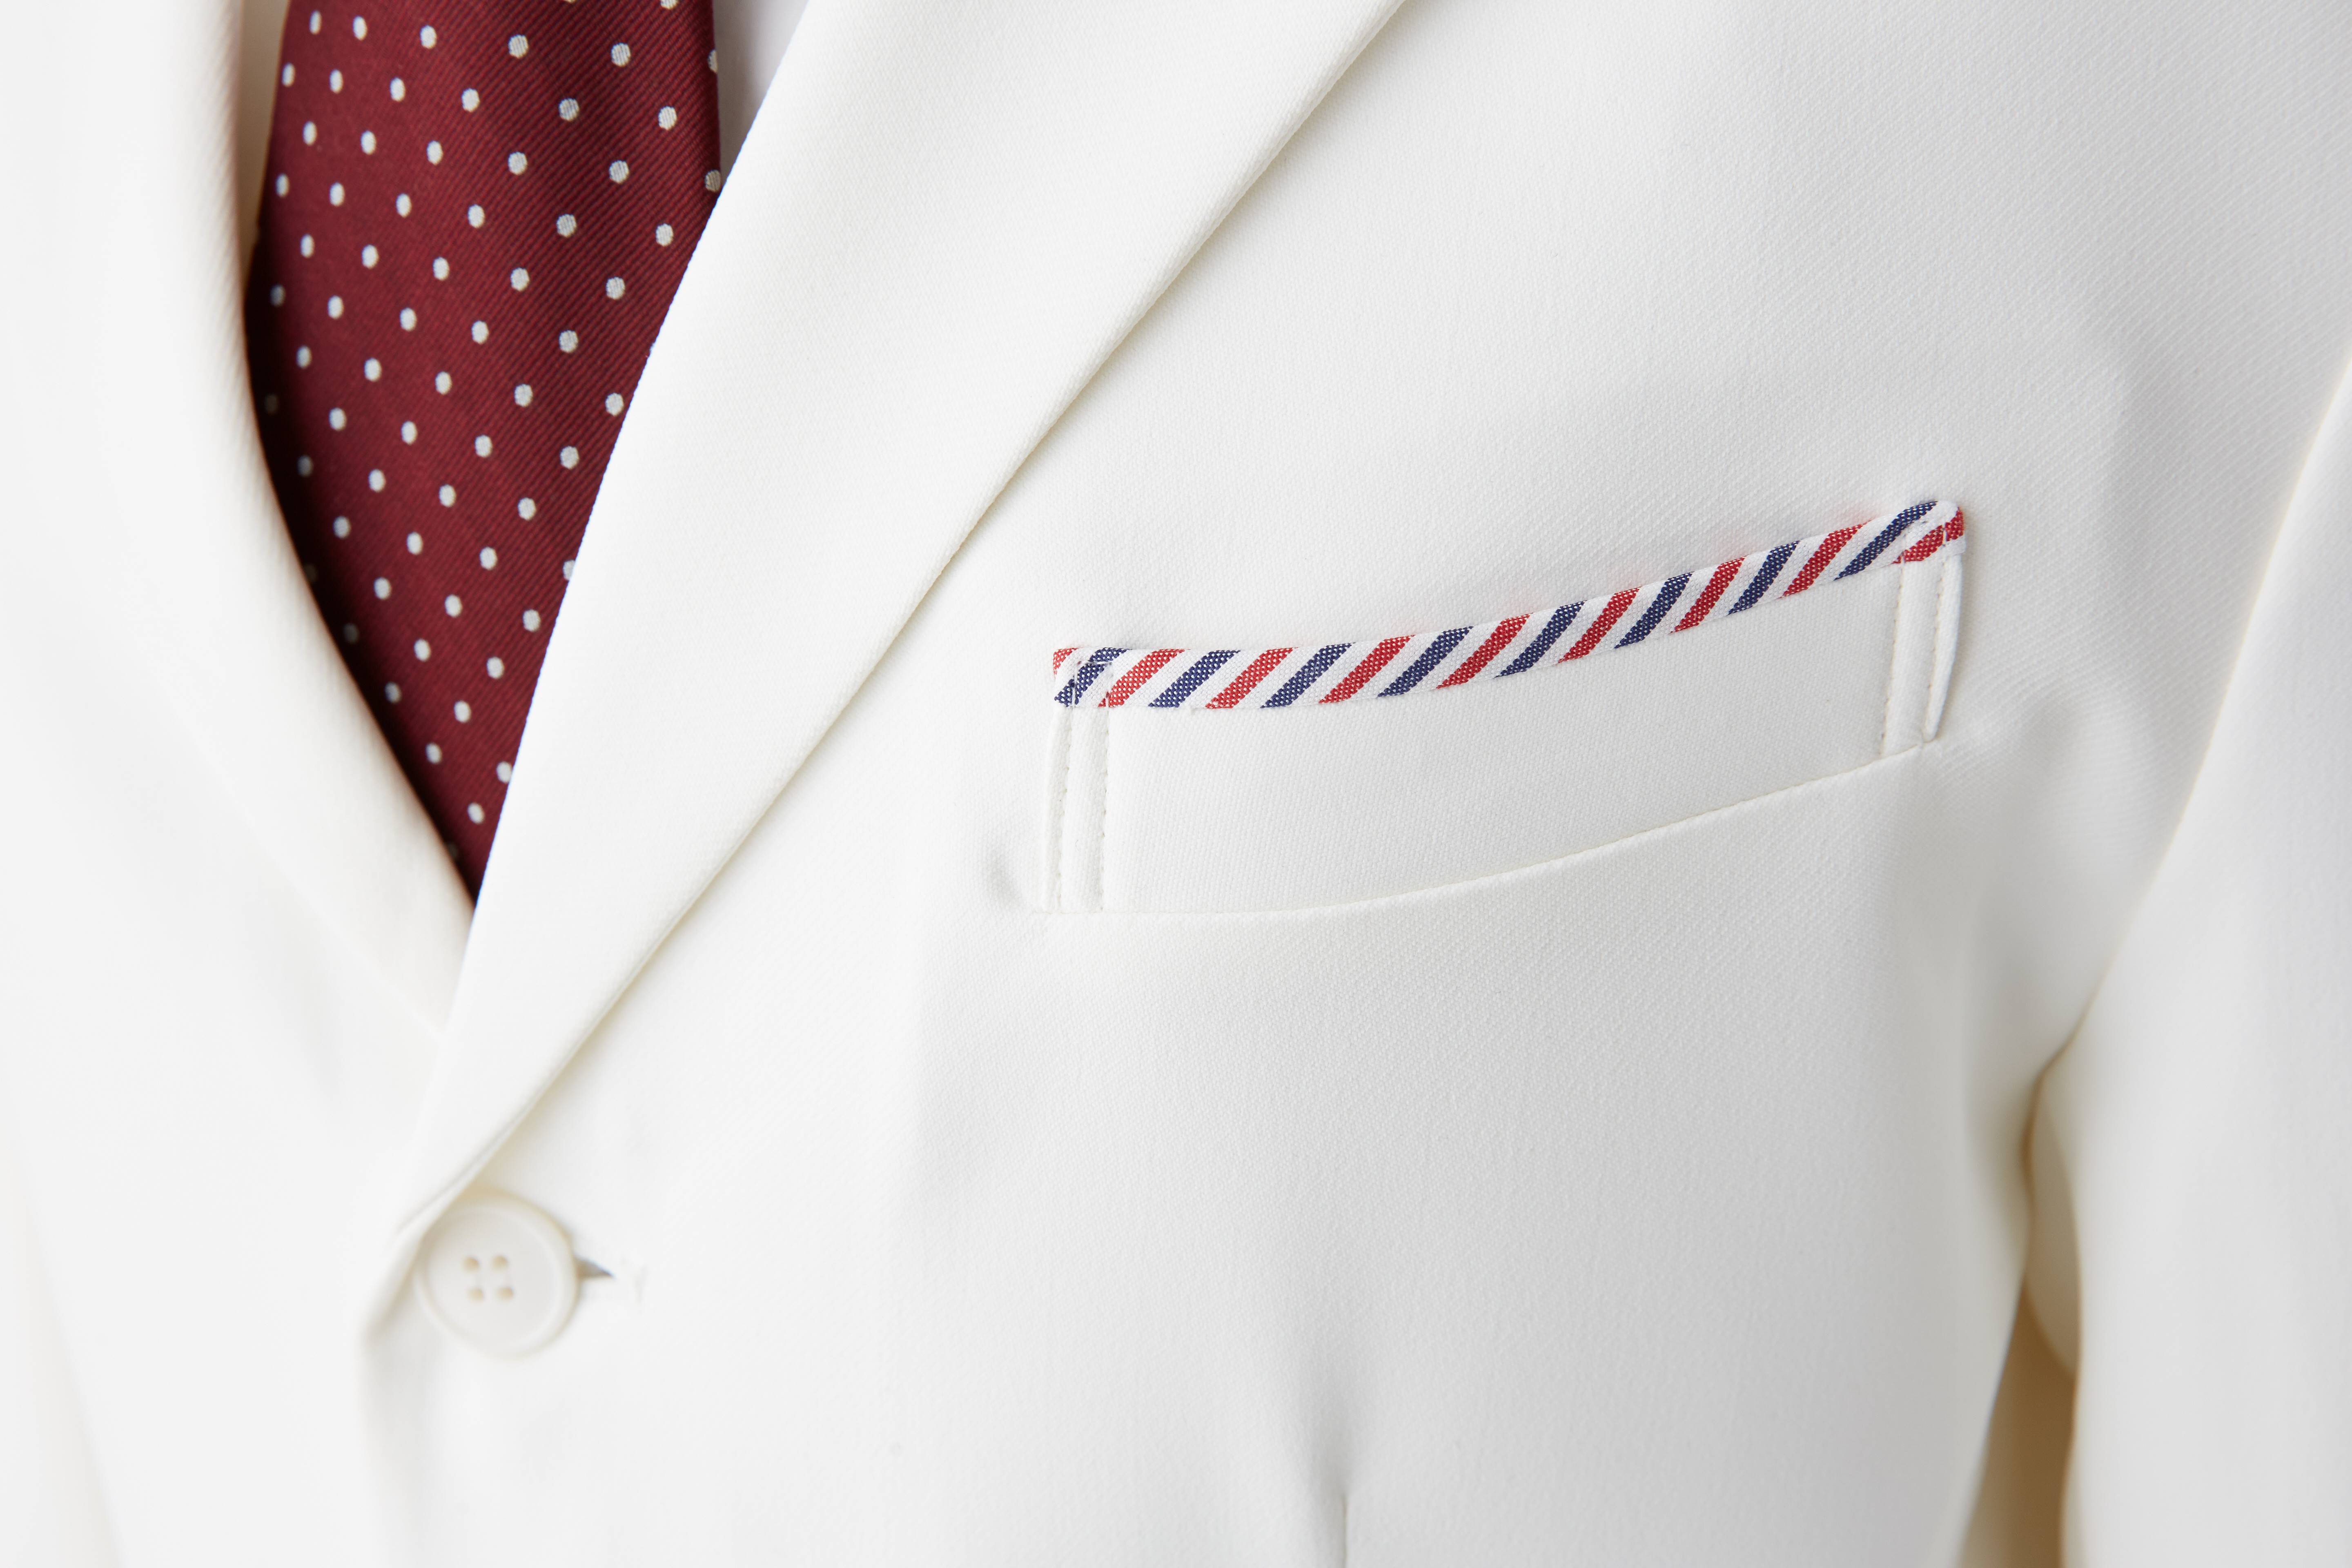 おしゃれ白衣メーカーと現役dr のセレクトshopによるコラボ白衣が登場 モチベーションを上げるメンズ白衣 1月15日に新発売 Meadow株式会社のプレスリリース